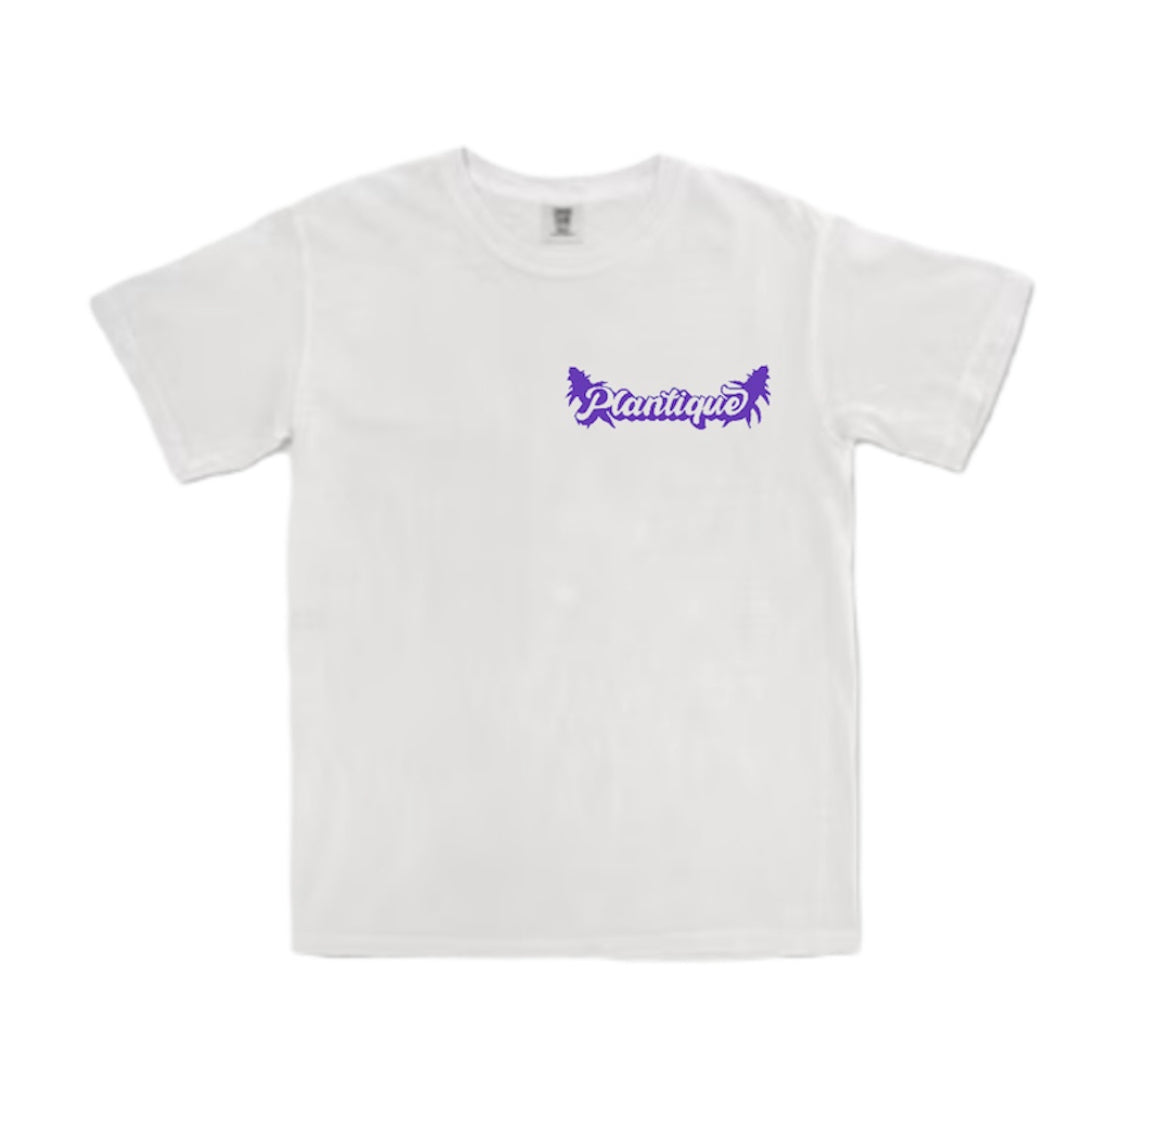 Plantique Classic T-Shirt - White/Purple front